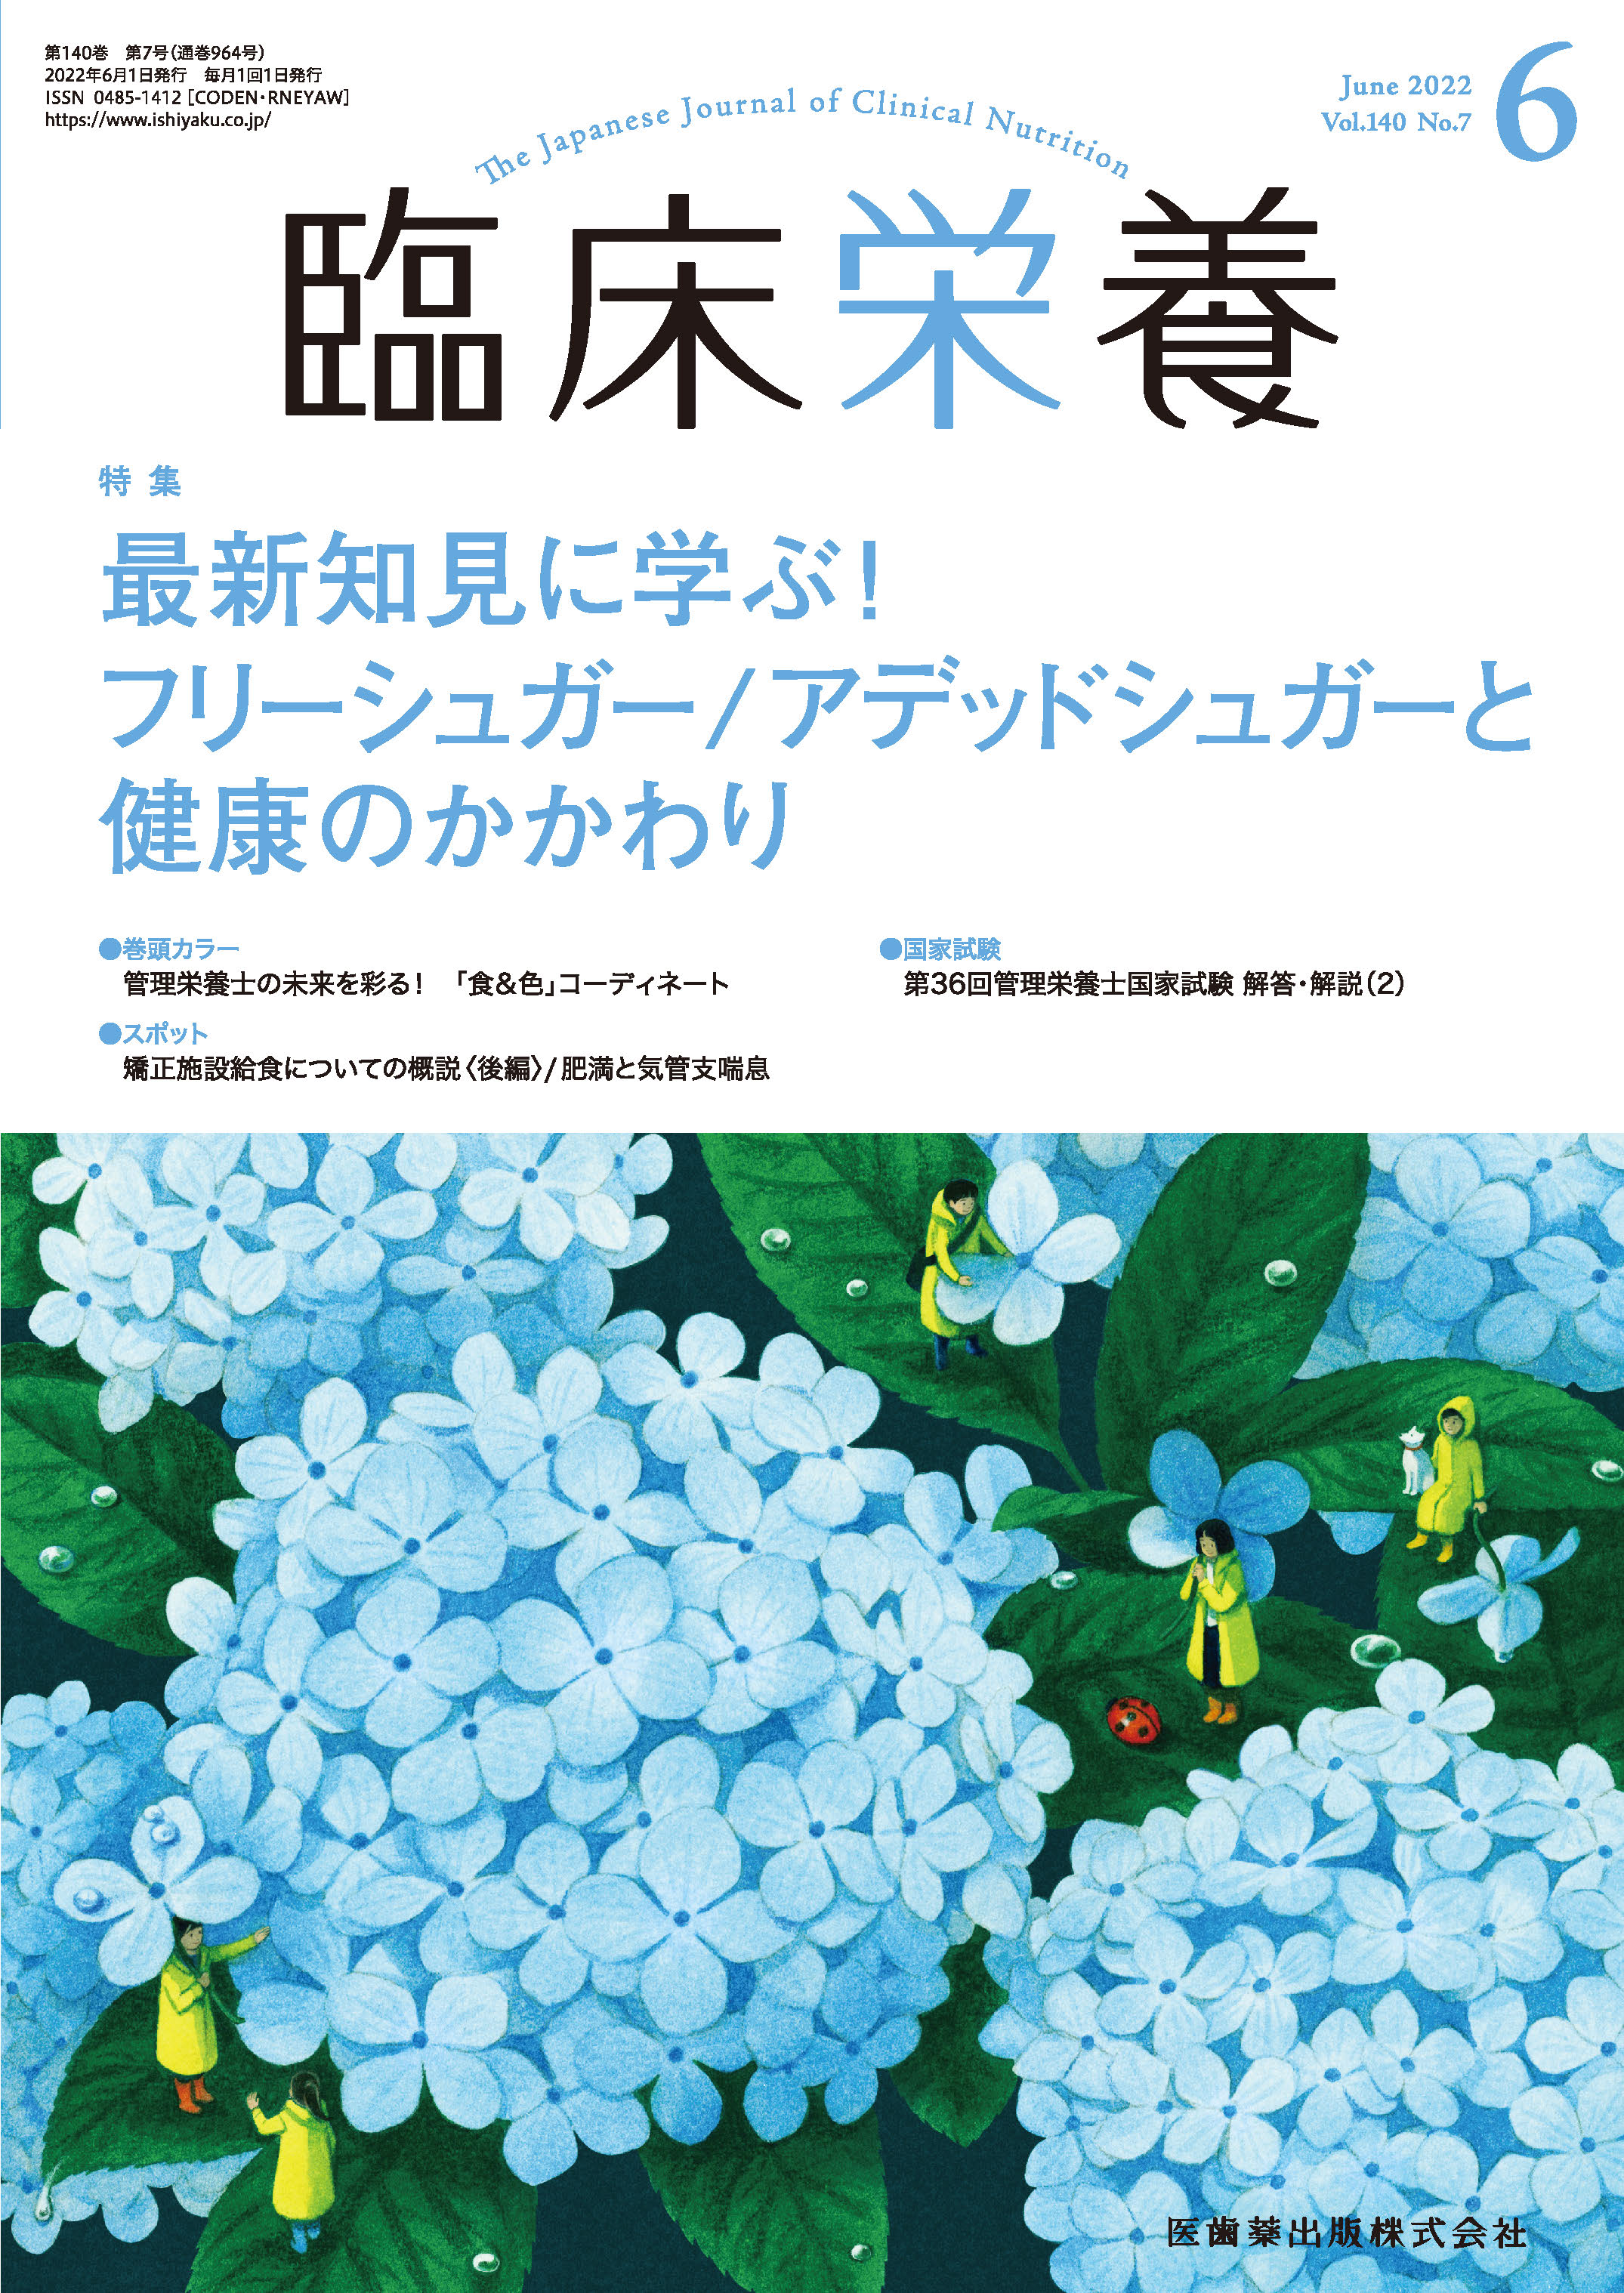 臨床栄養 140巻7号【電子版】 | 医書.jp